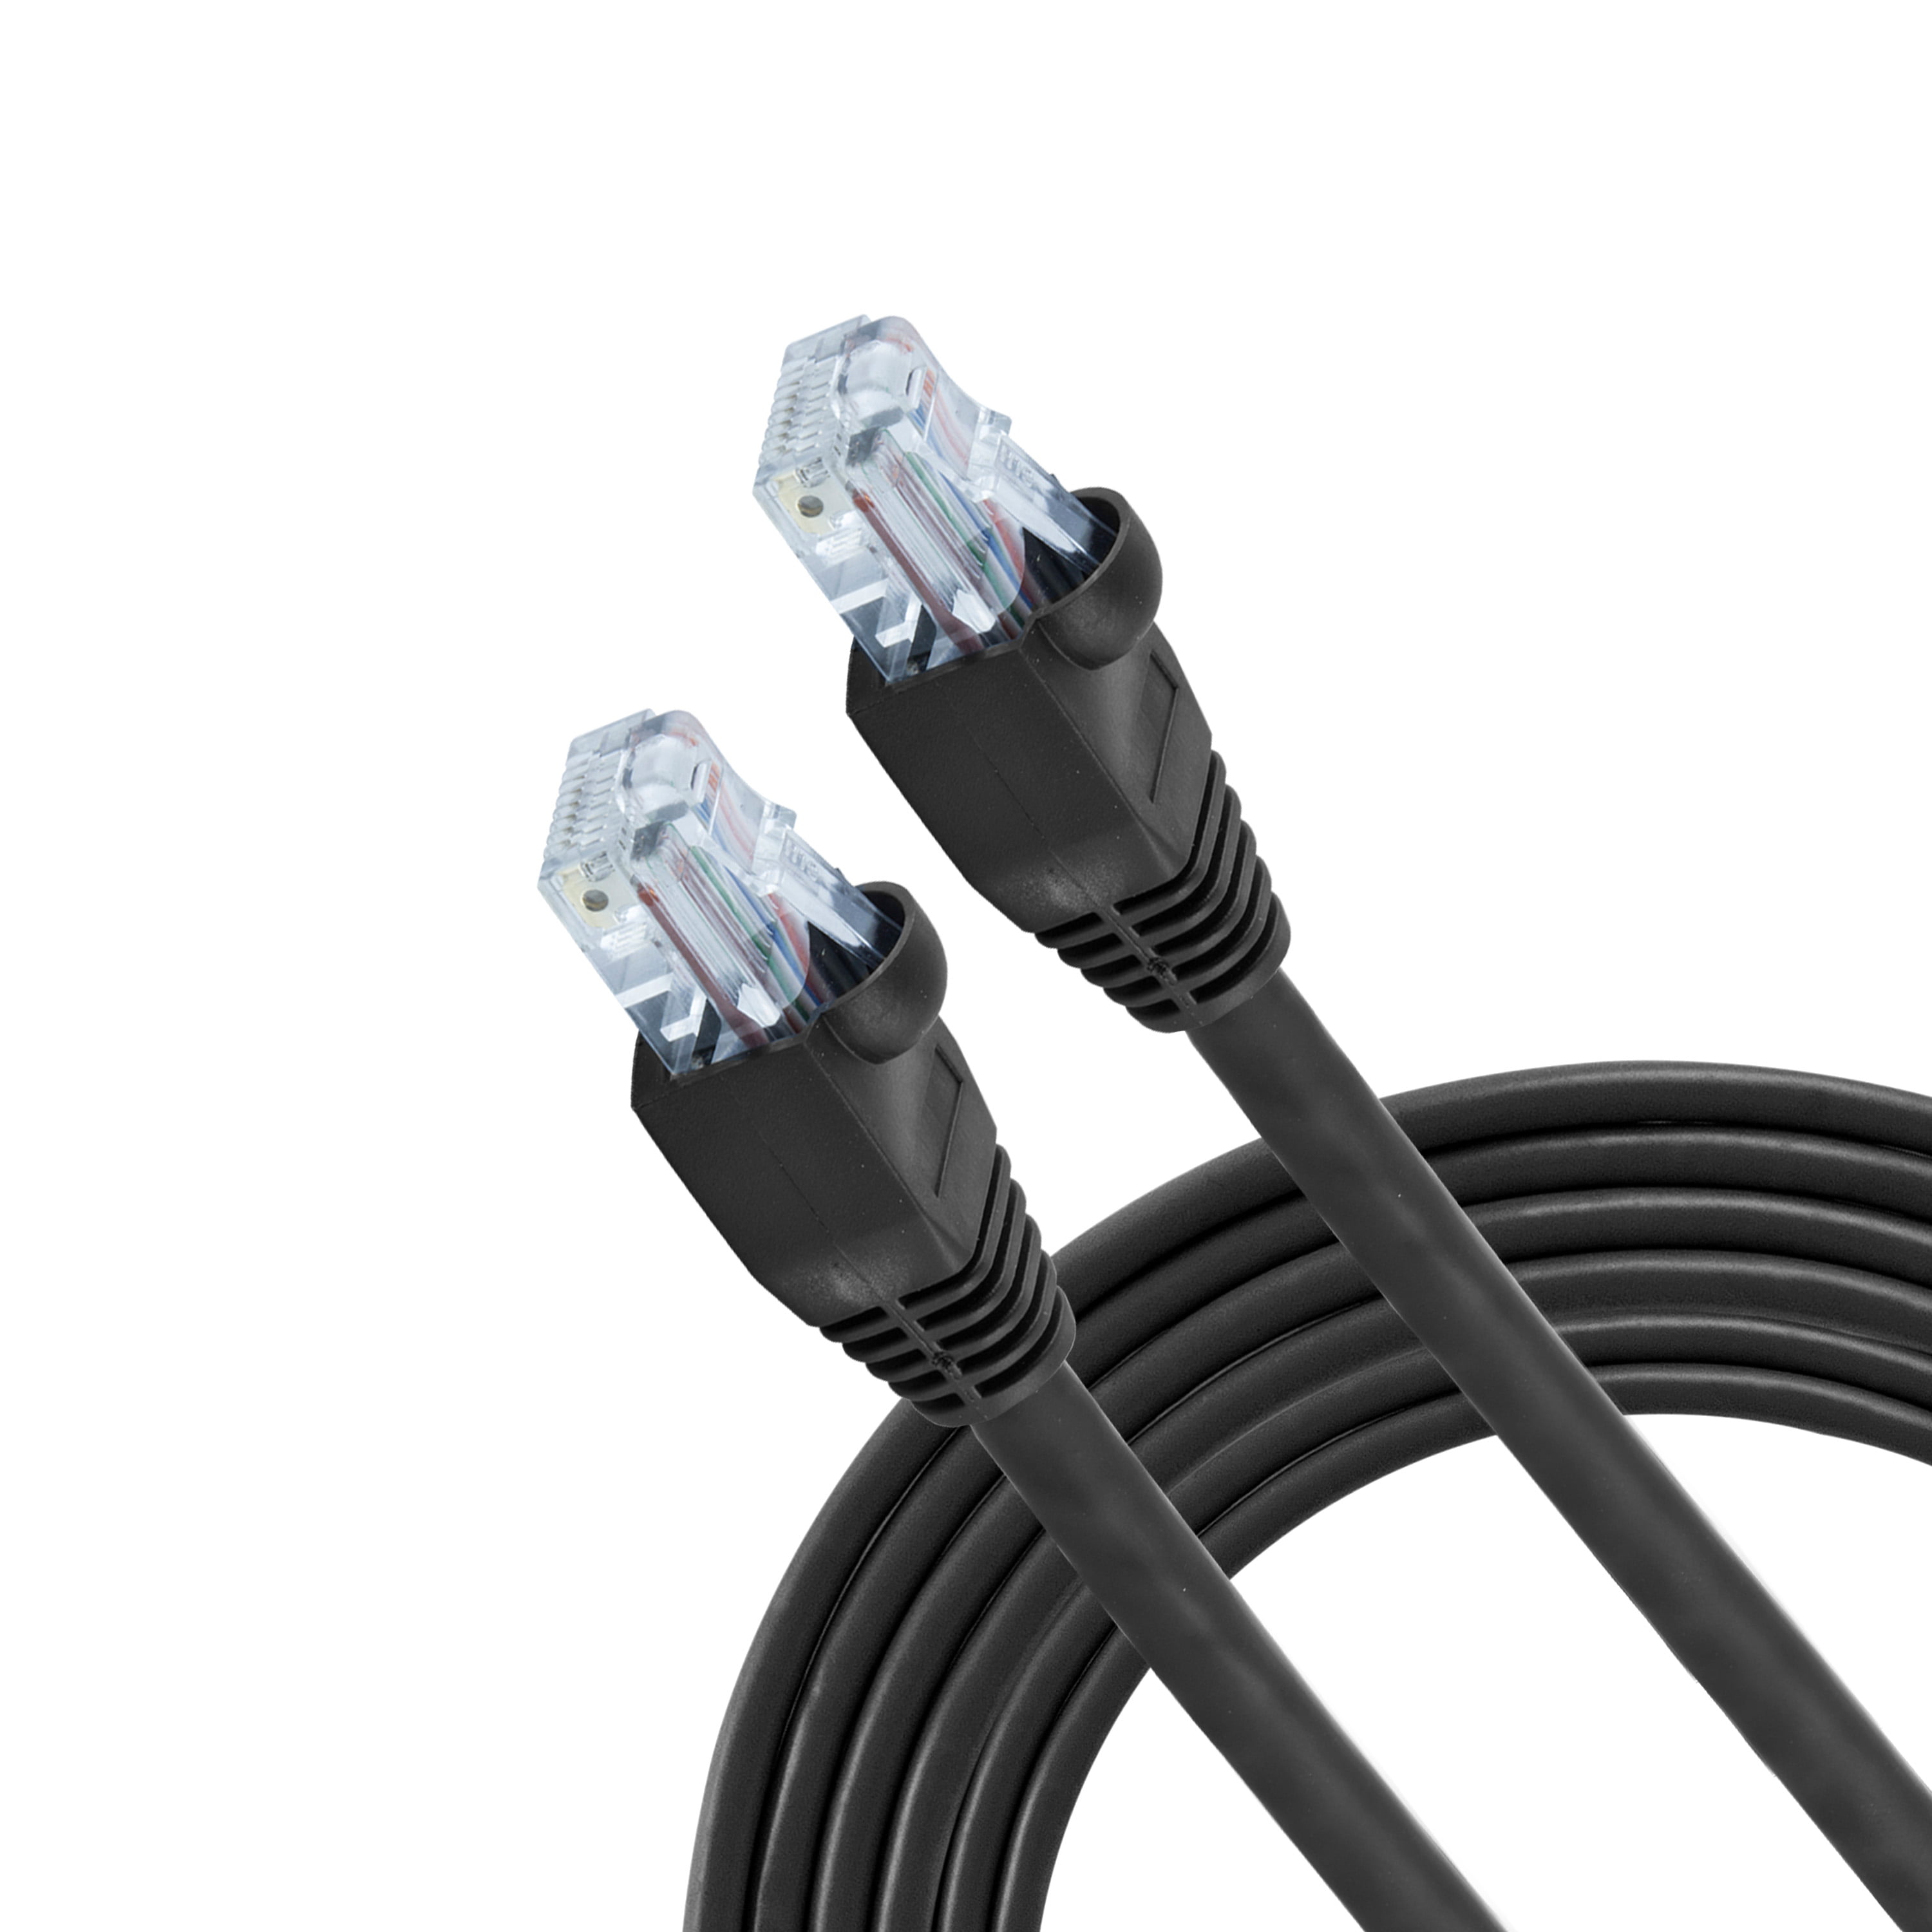 3.3 ft Ethernet Cable Cat5e RJ45 Plug Cat5e Black 1 m RJ45 Plug